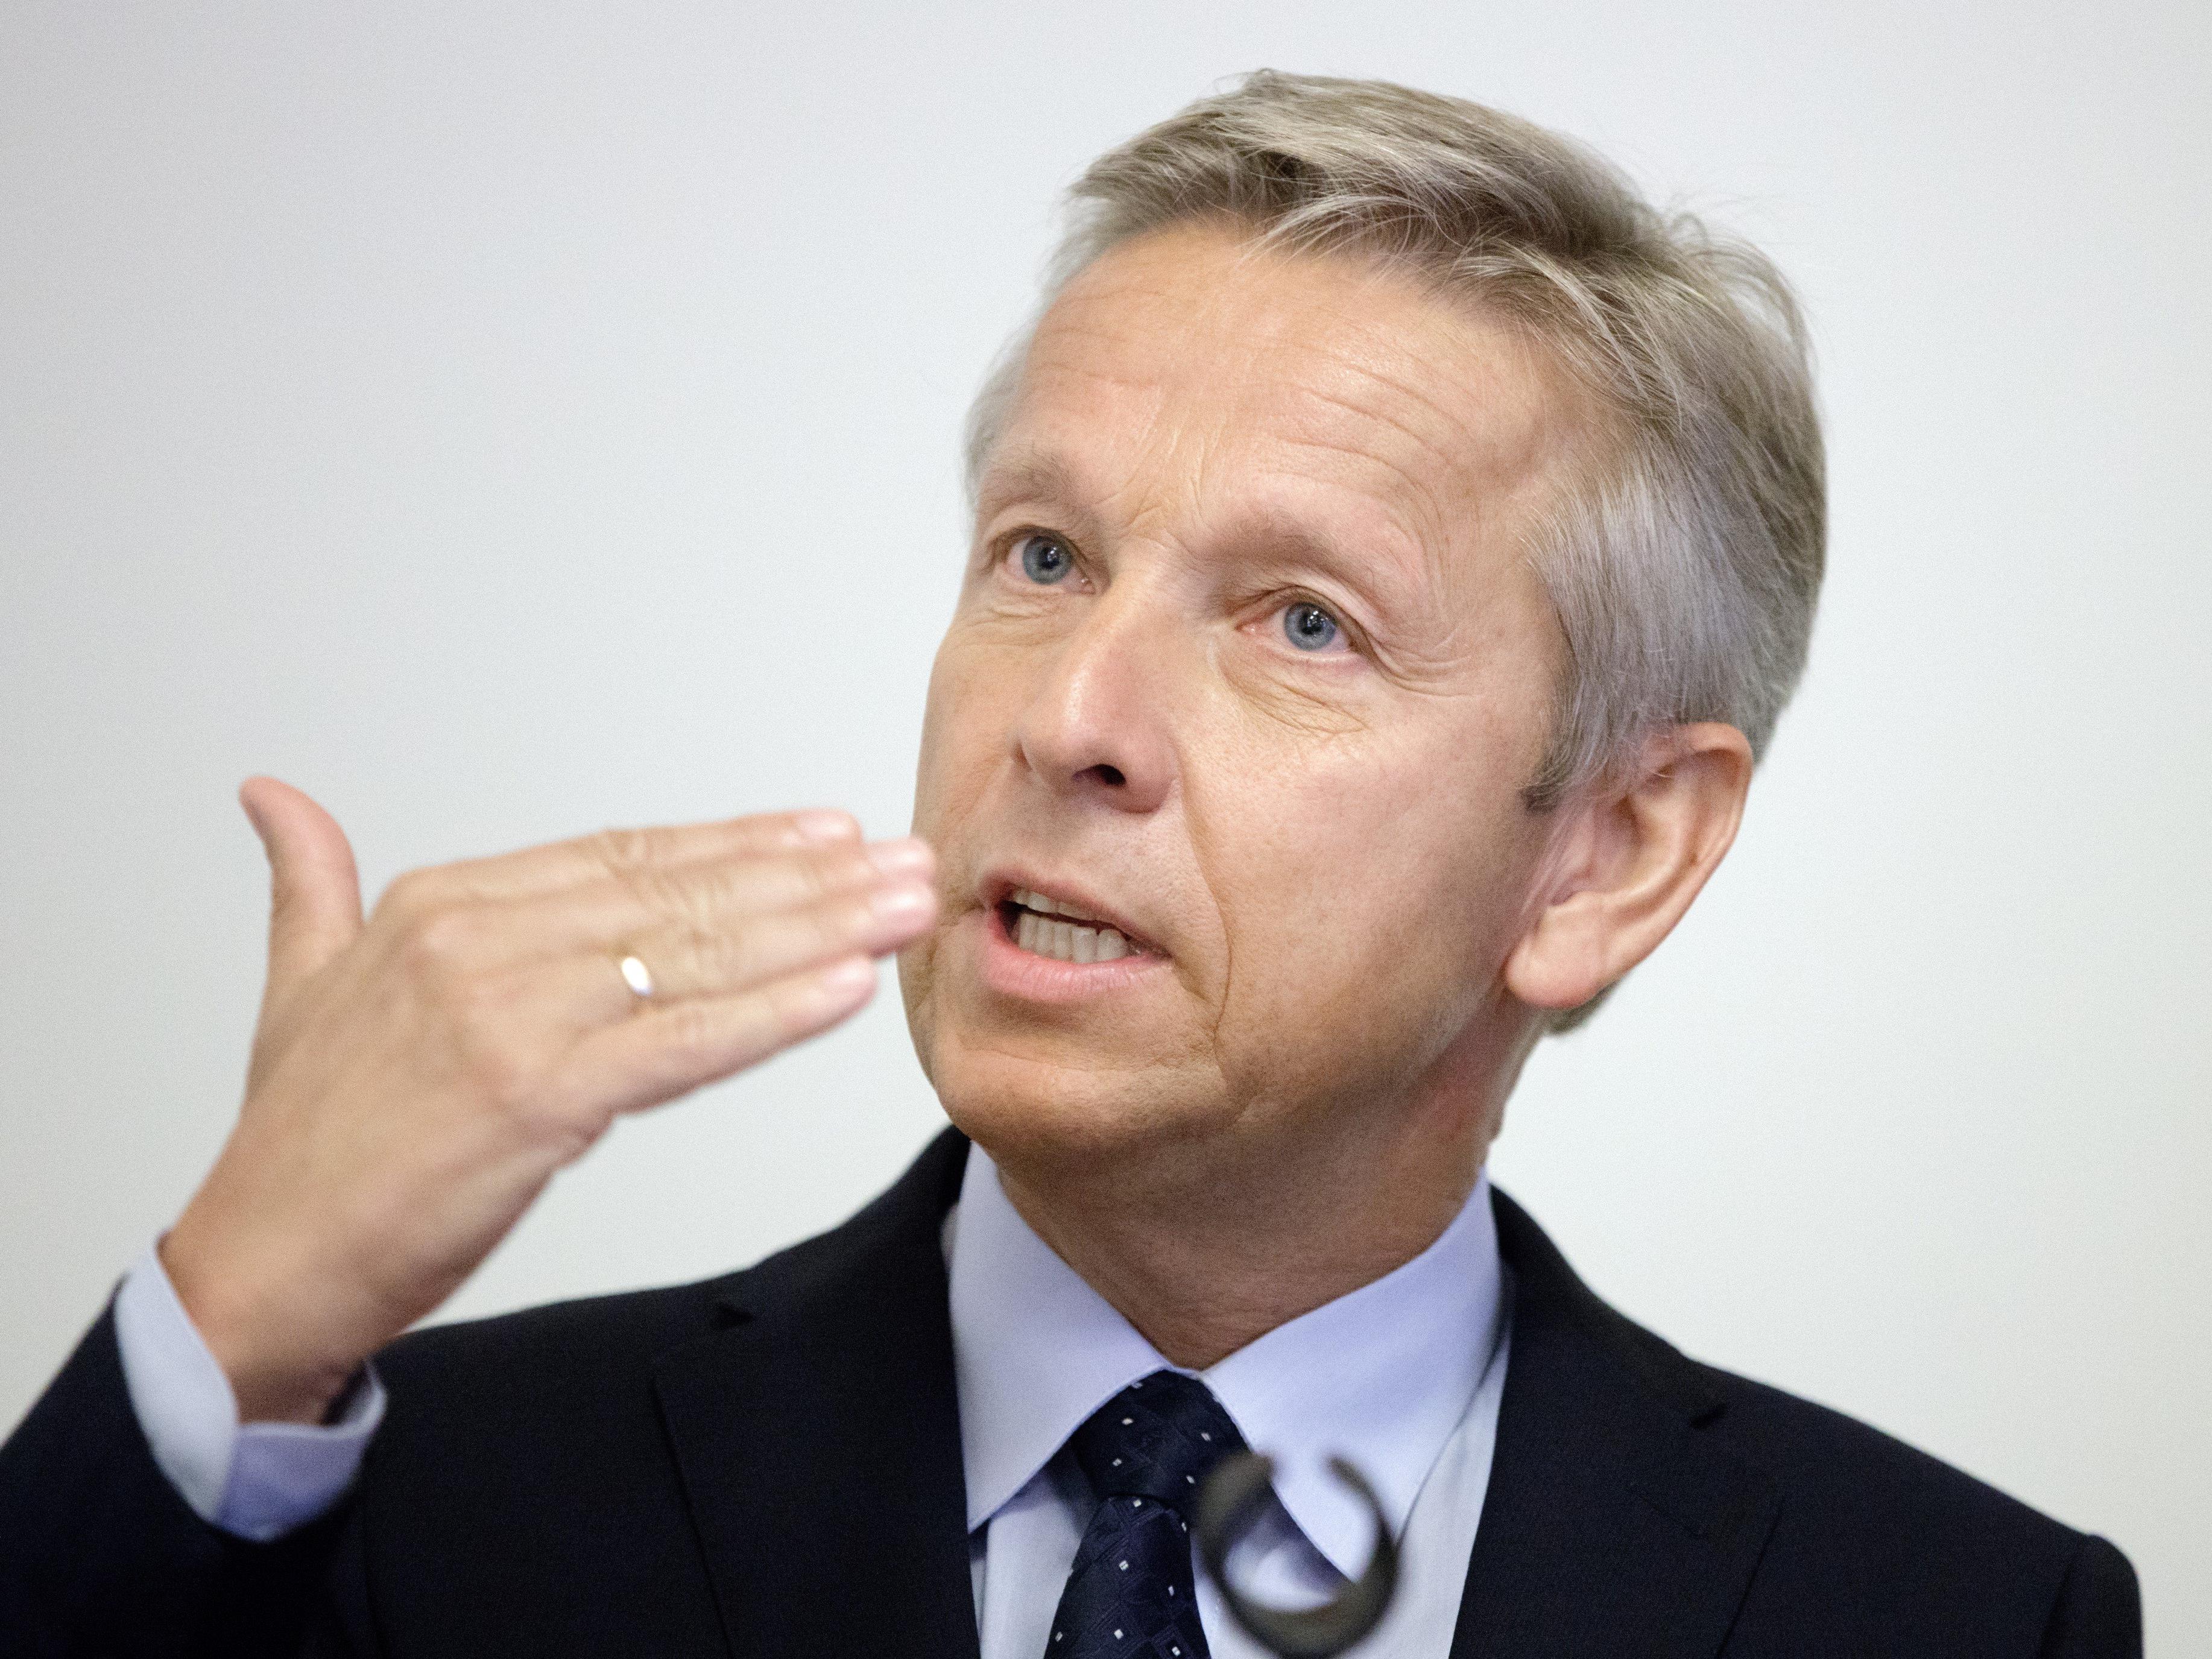 ÖVP-Klubobmann Reinhold Lopatka bleibt bei seiner Unterstützung für Norbert Hofer.